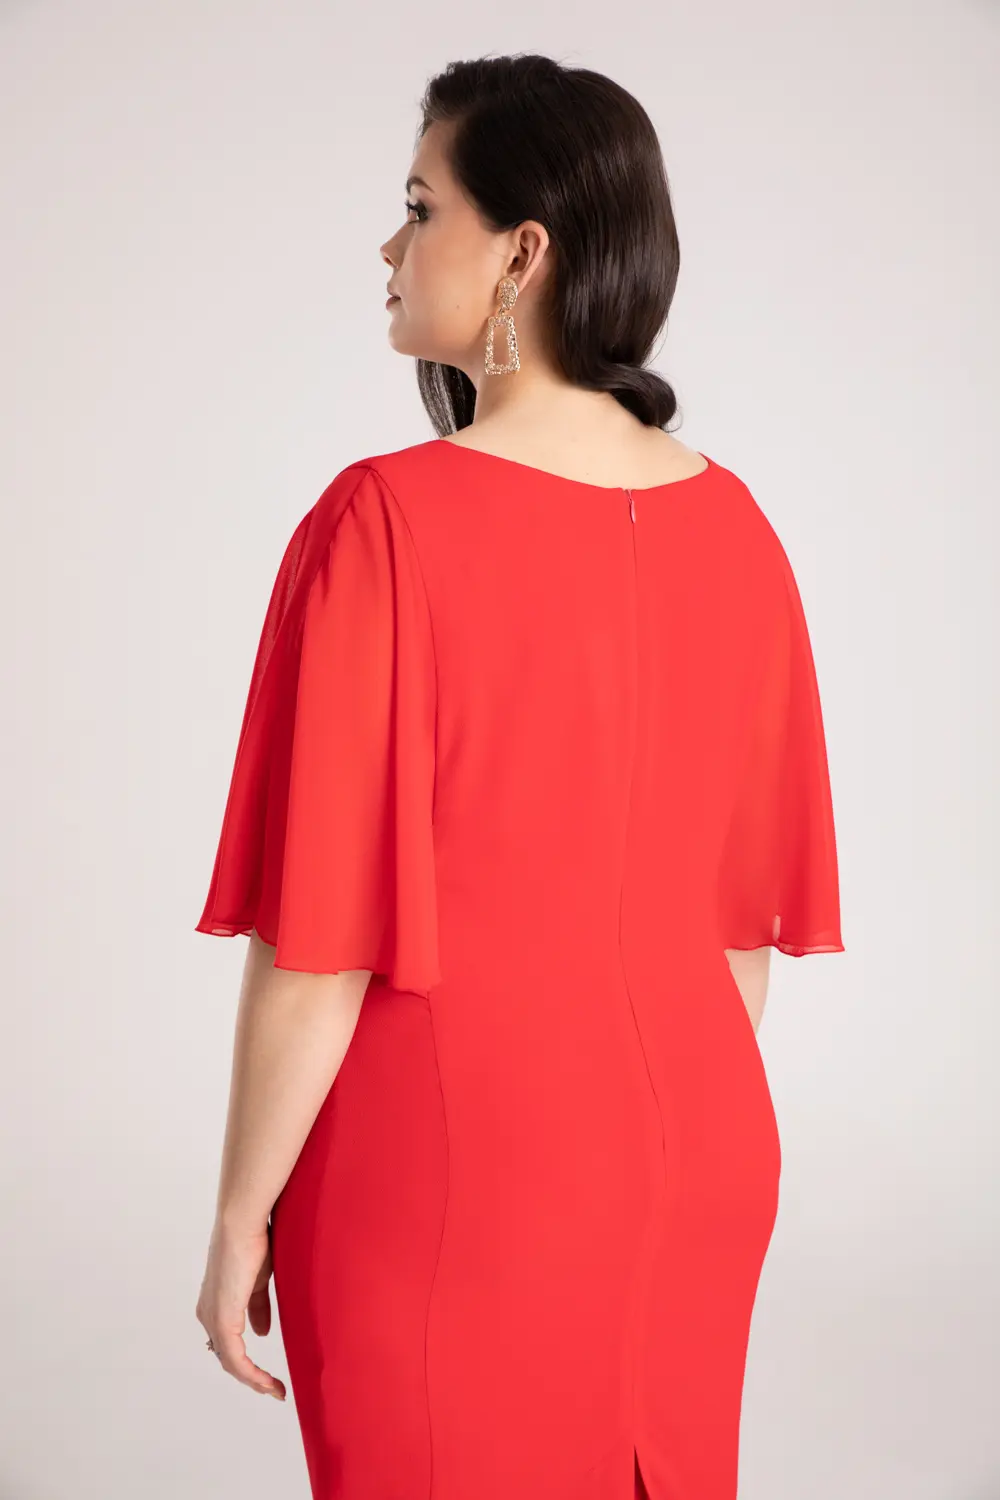 wizytowa sukienka z rękawami z szyfonu czerwona marki Vito Vergelis